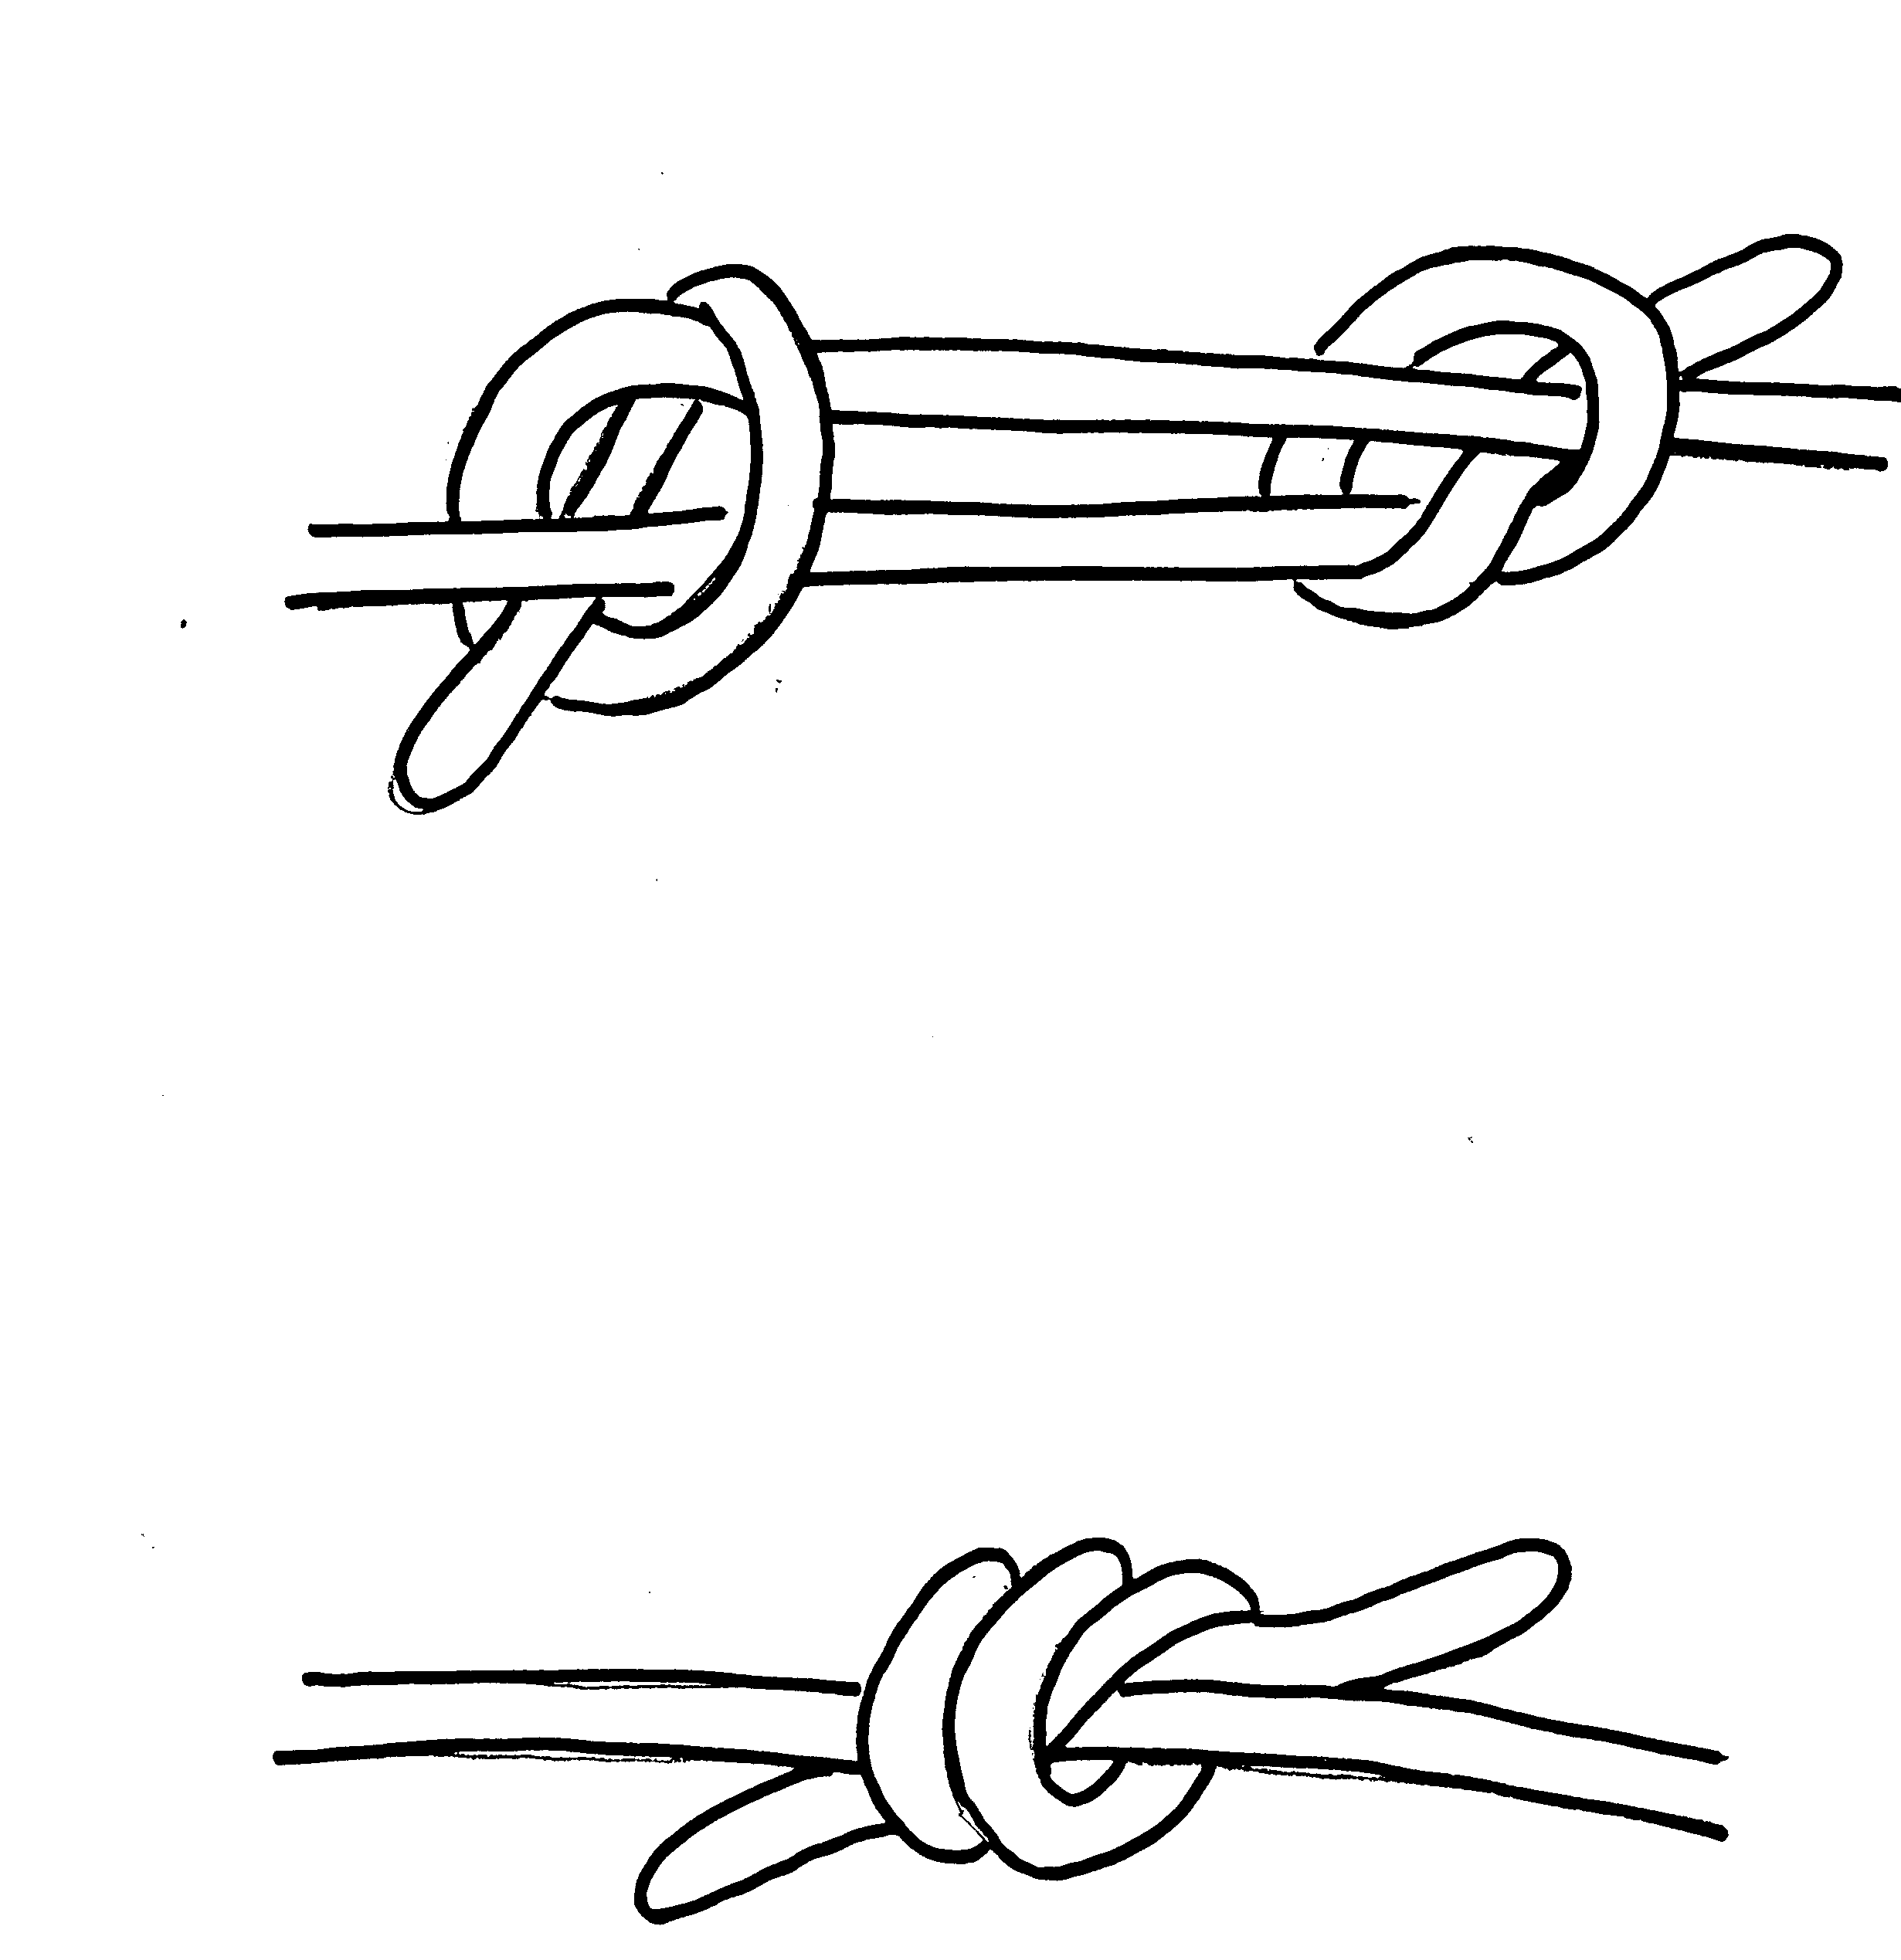 Завязка узлов. Узел Таутлайн. Ткацкий узел схема завязывания. Узлы на веревке схемы завязывания. Прочный узел.